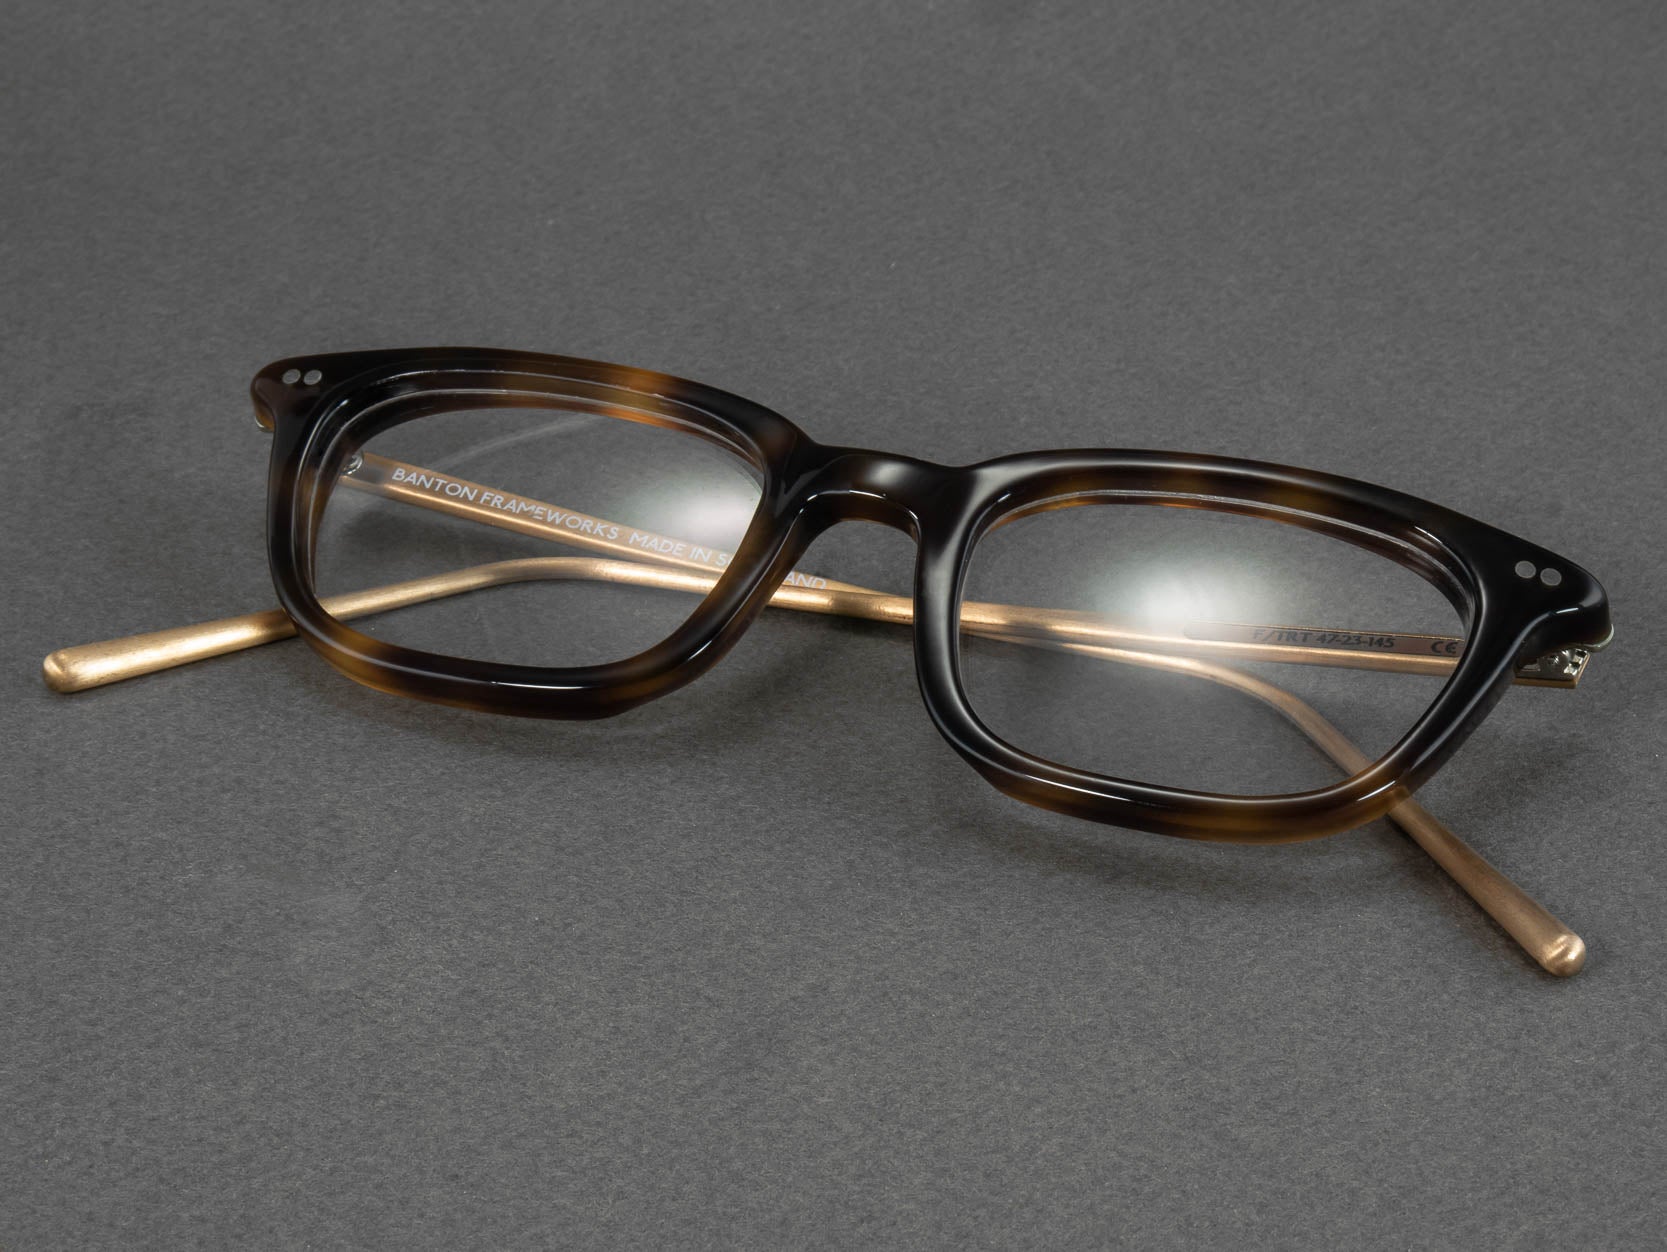 Tortoise shell rectangular glasses frame for men - Banton Frameworks